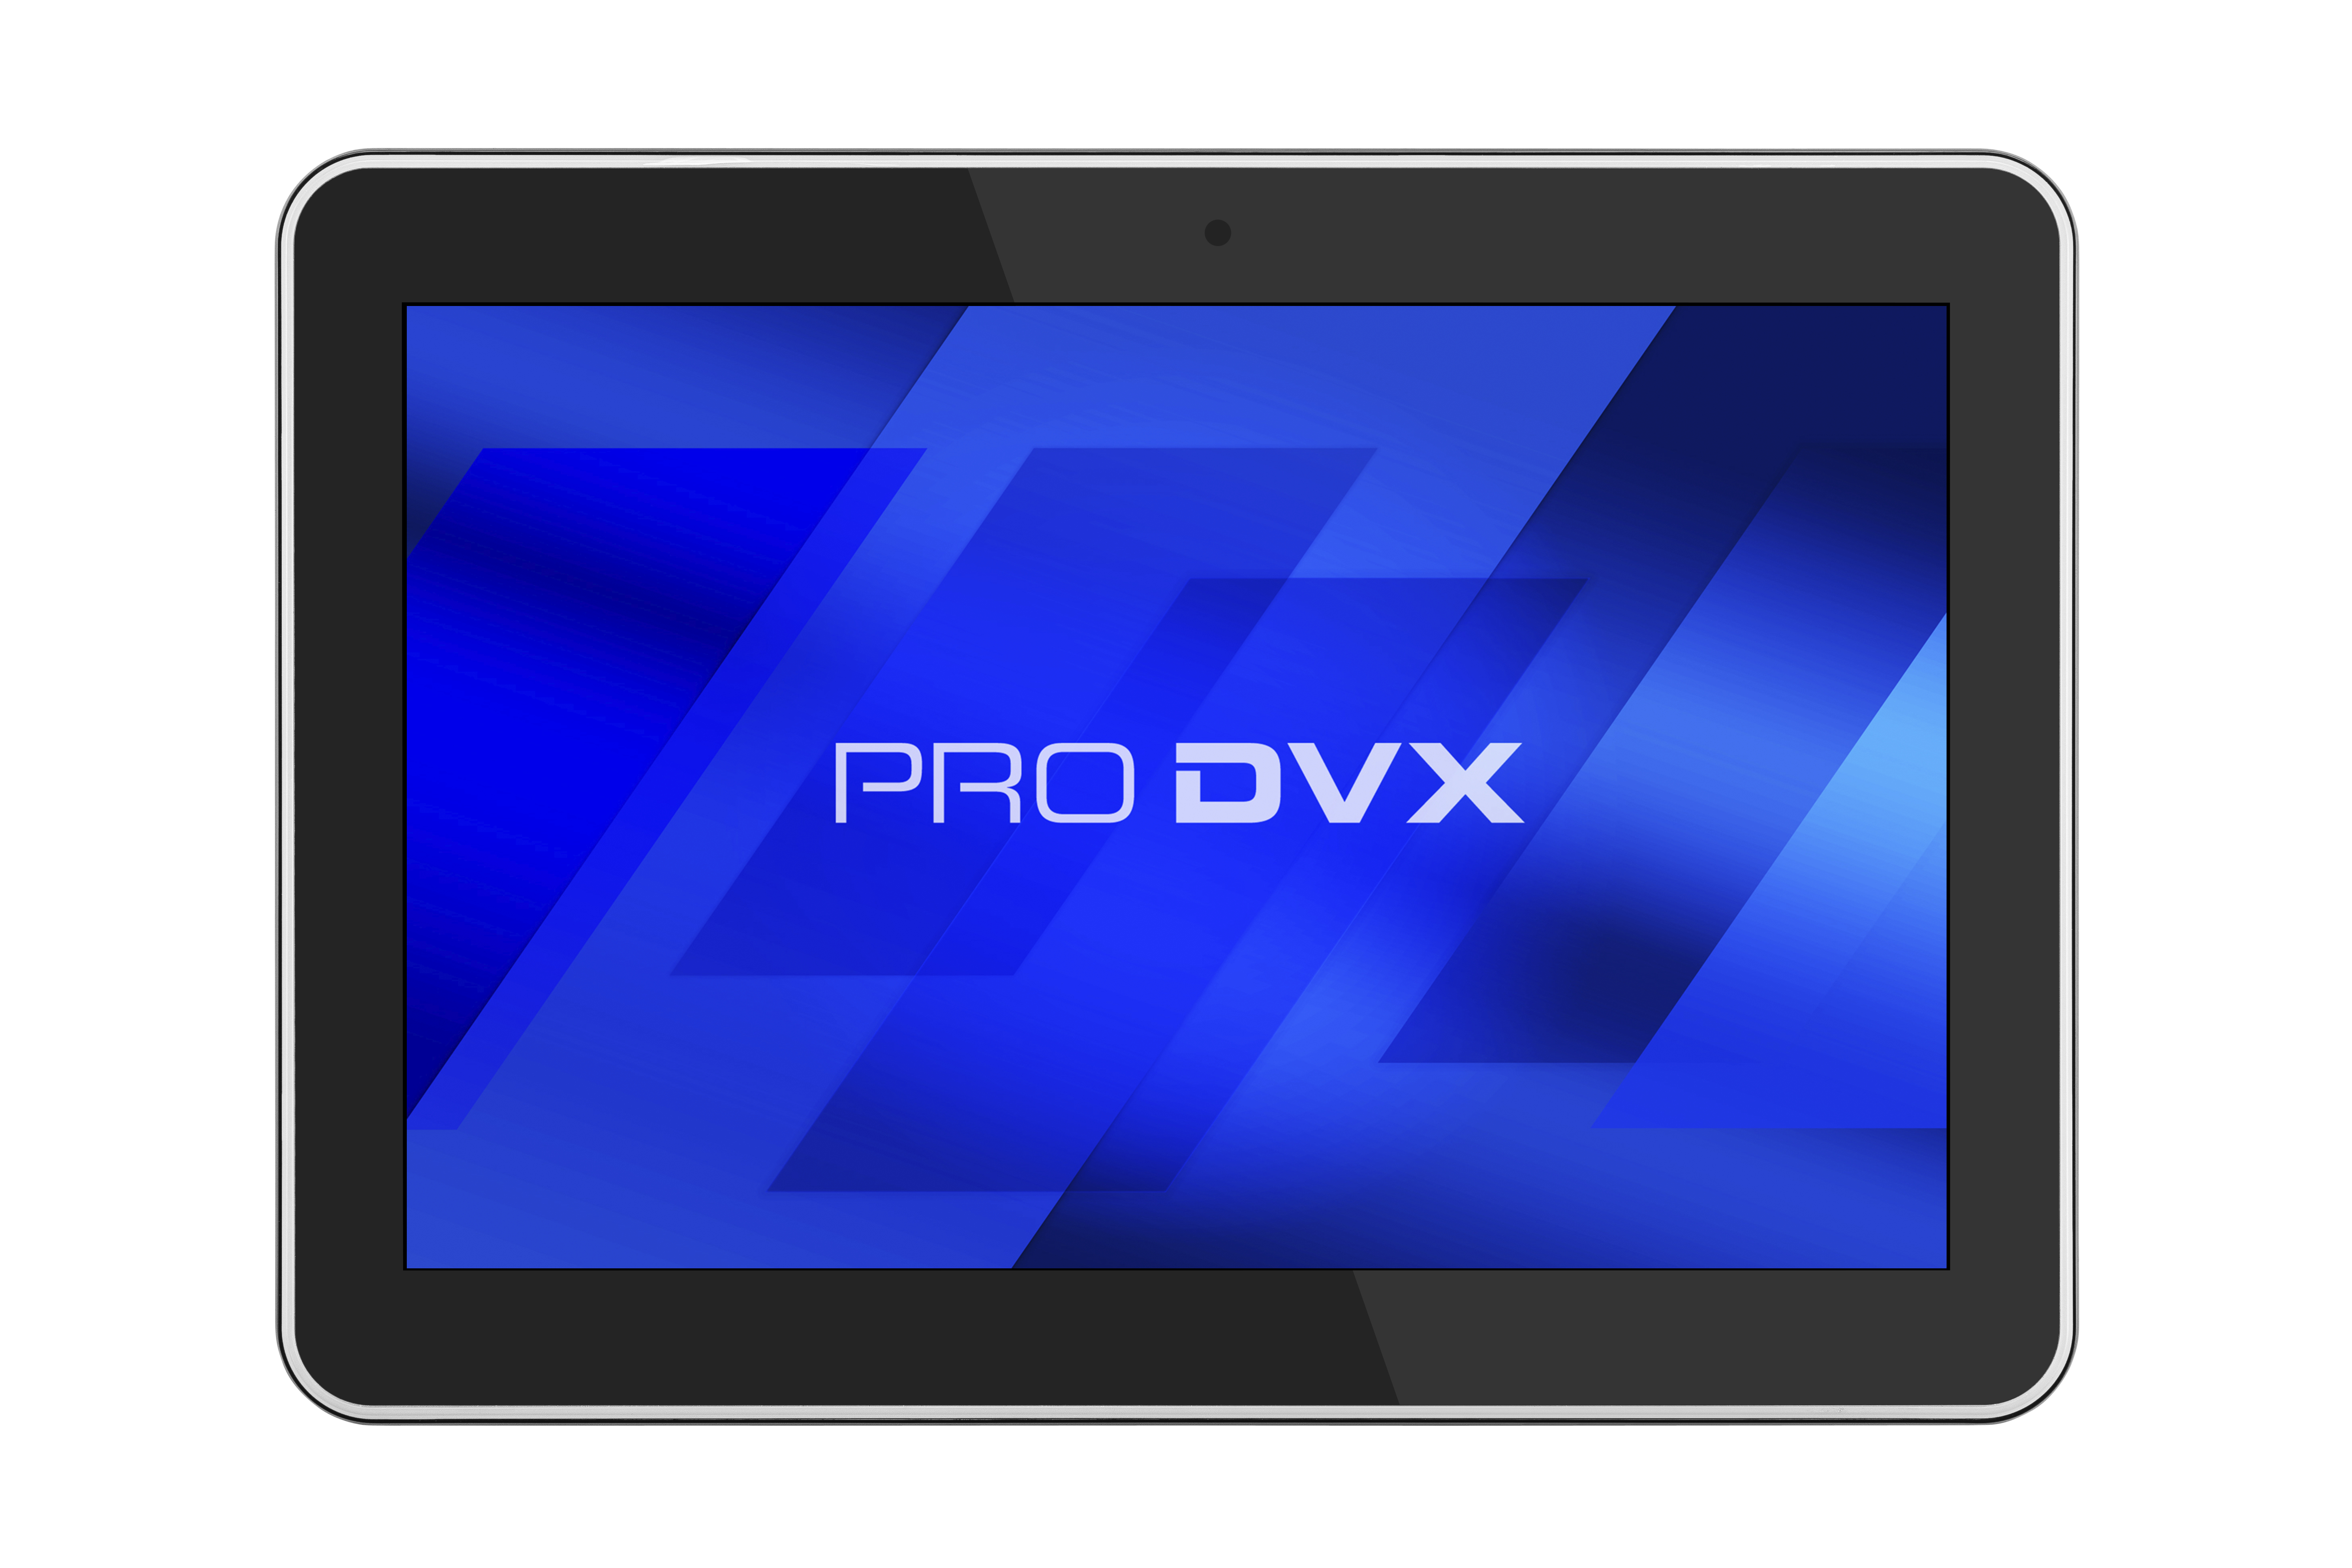 ProDVX APPC-10XP